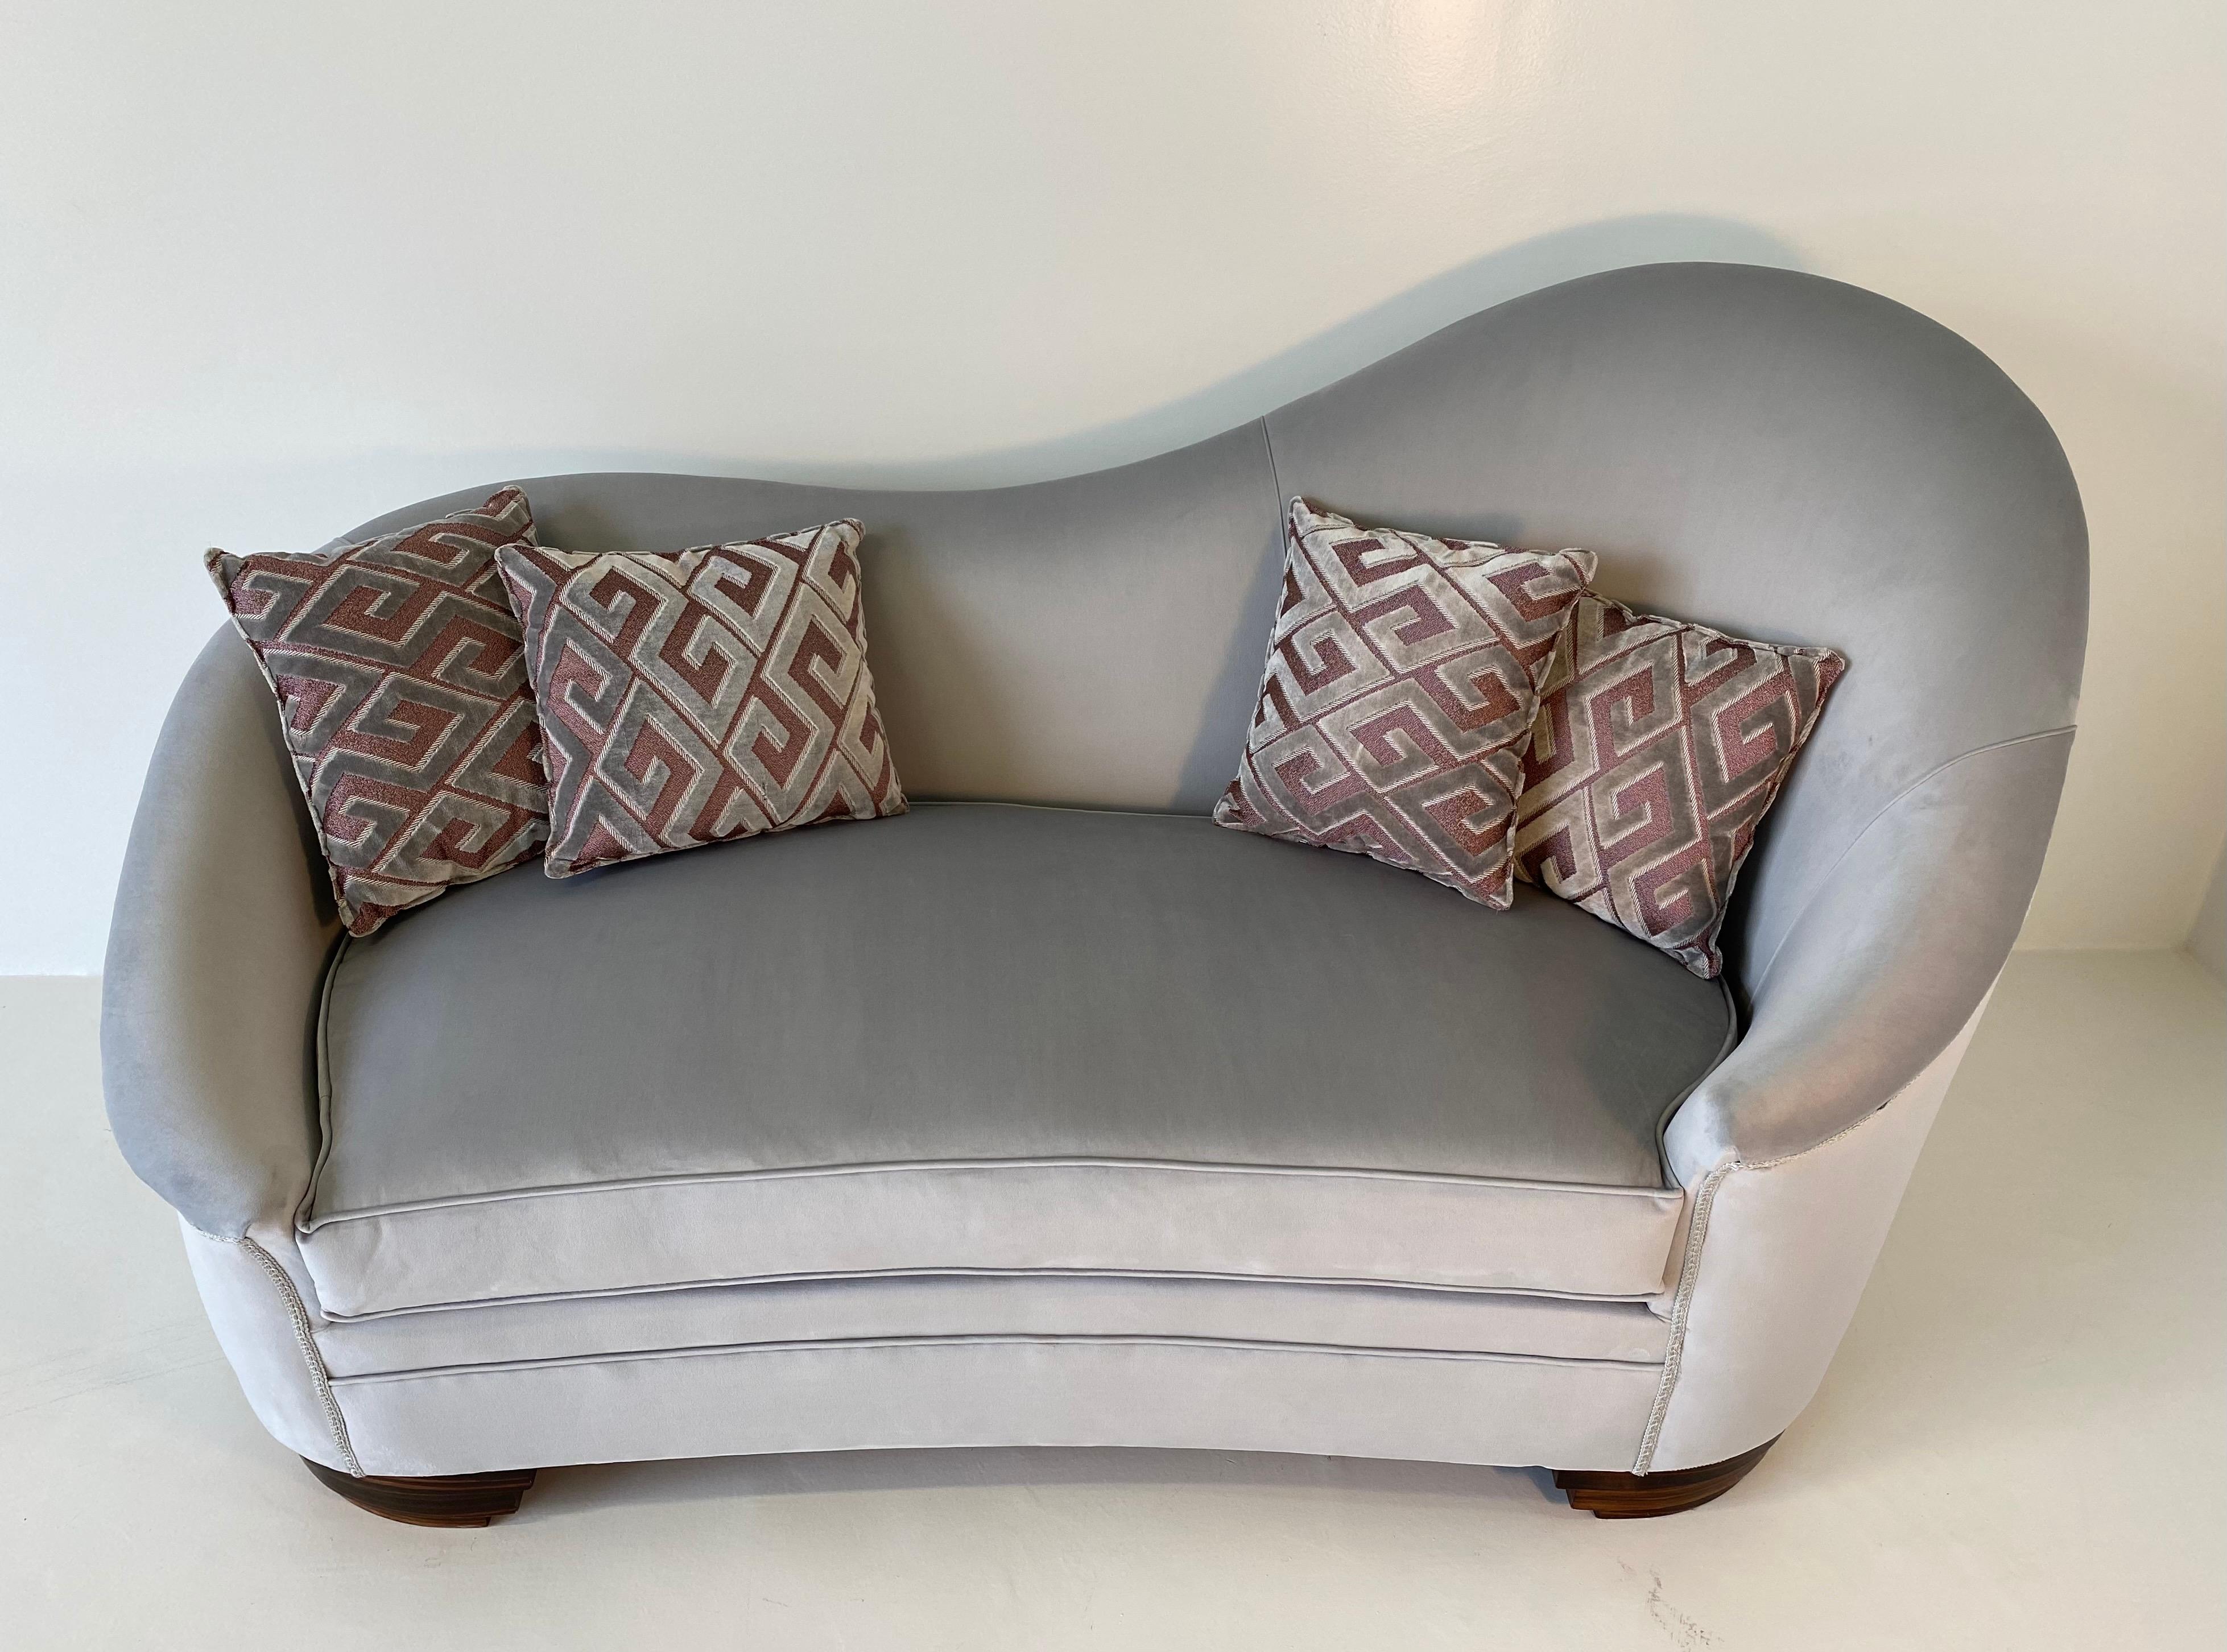 Dieses Sofa wurde in den 1950er Jahren in Italien hergestellt.
Die Füße sind mit Makassar bedeckt.
Das Sofa ist neu mit grauem, feinem Samt gepolstert.